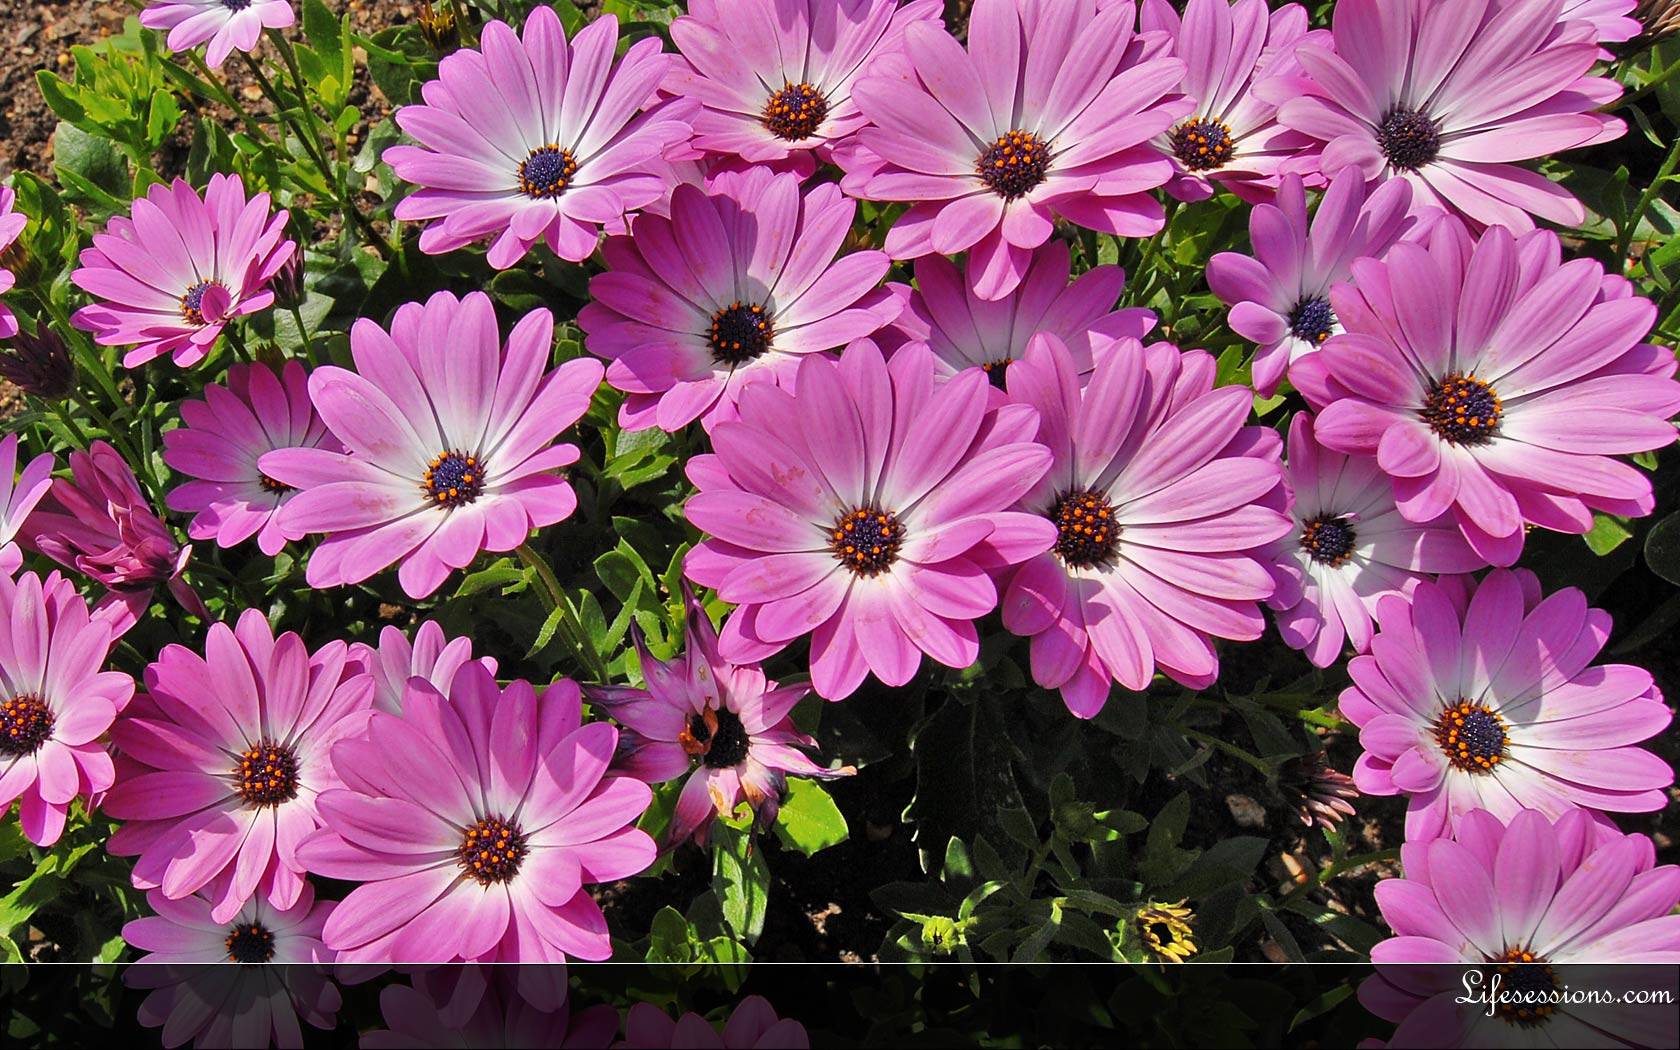 Flowers Summer Desktop Images Wallpapers For Desktop Backgrounds